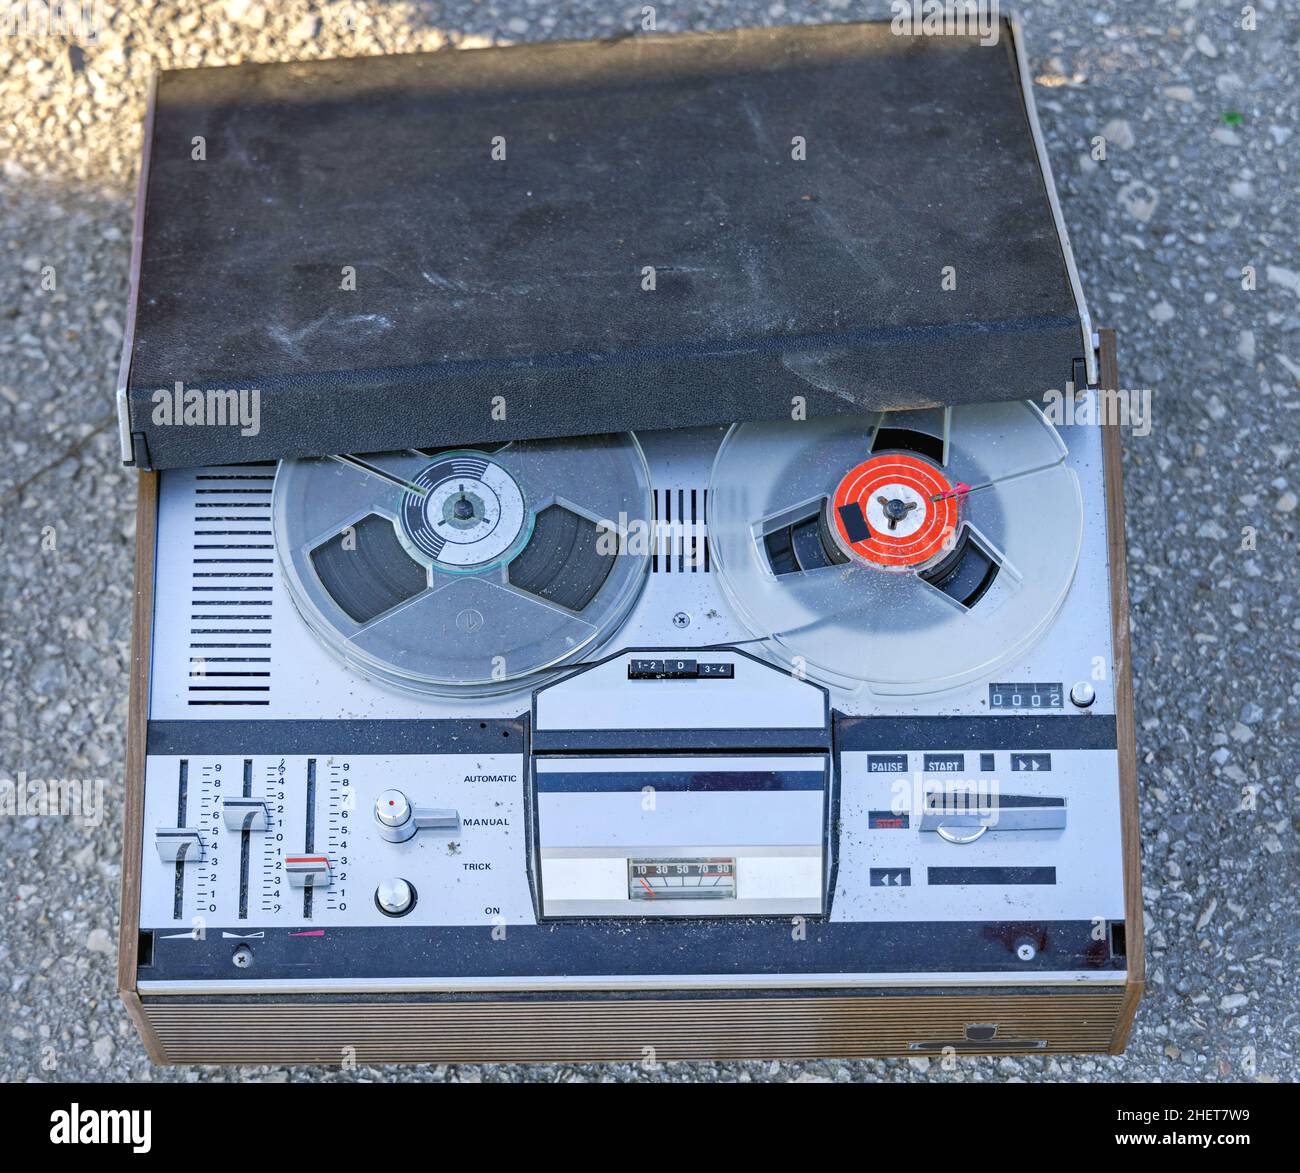 https://c8.alamy.com/comp/2HET7W9/vintage-music-reel-to-reel-tape-recorder-2HET7W9.jpg